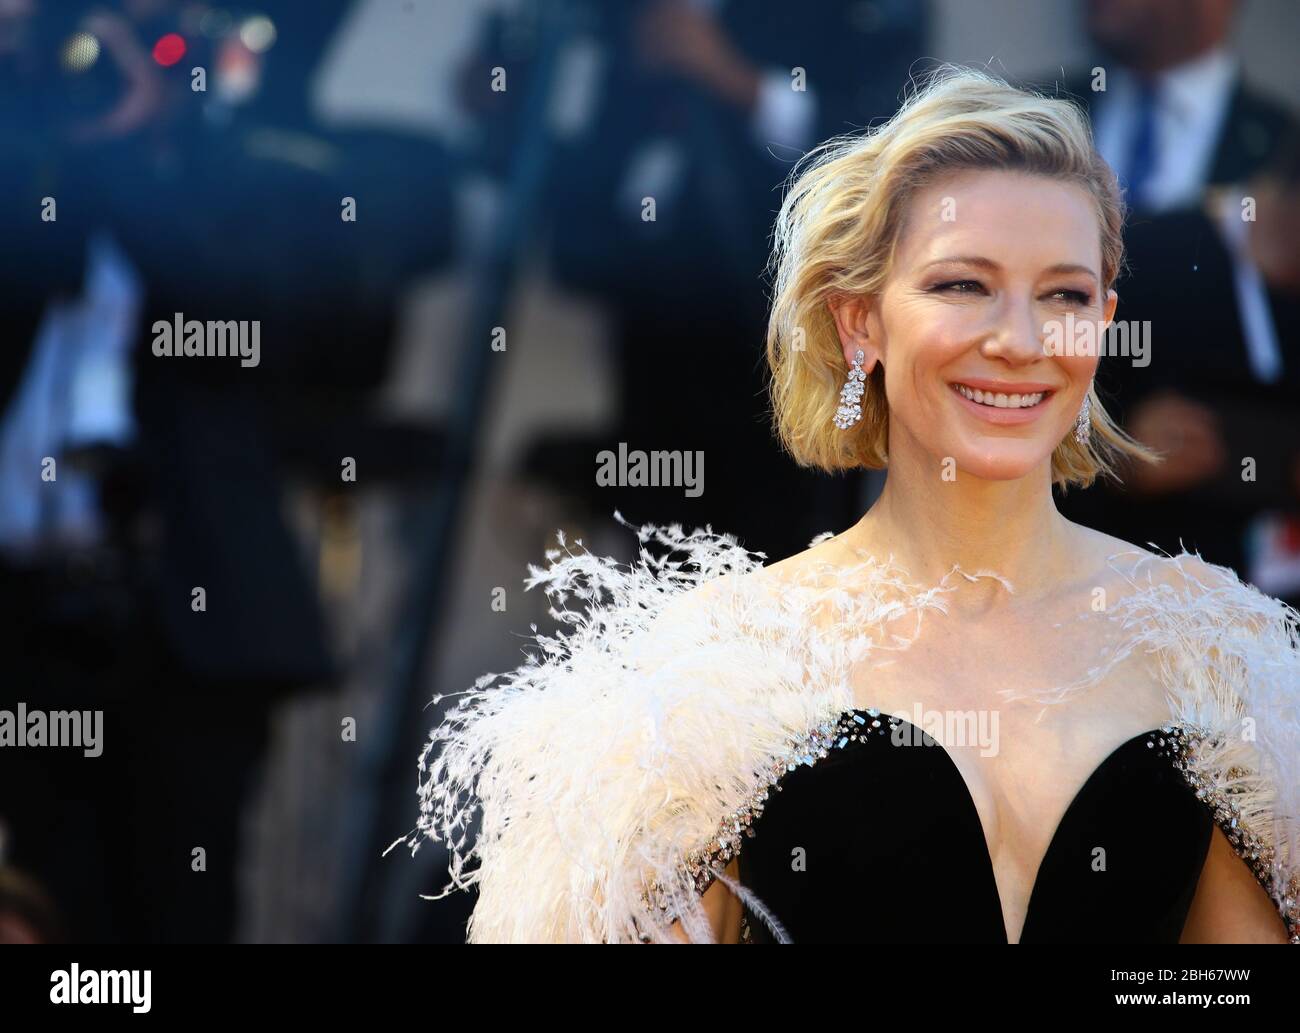 VENEDIG, ITALIEN - AUGUST 31: Cate Blanchett geht auf dem roten Teppich der Vorführung "A Star is Born" während der 75. Filmfestspiele von Venedig spazieren Stockfoto